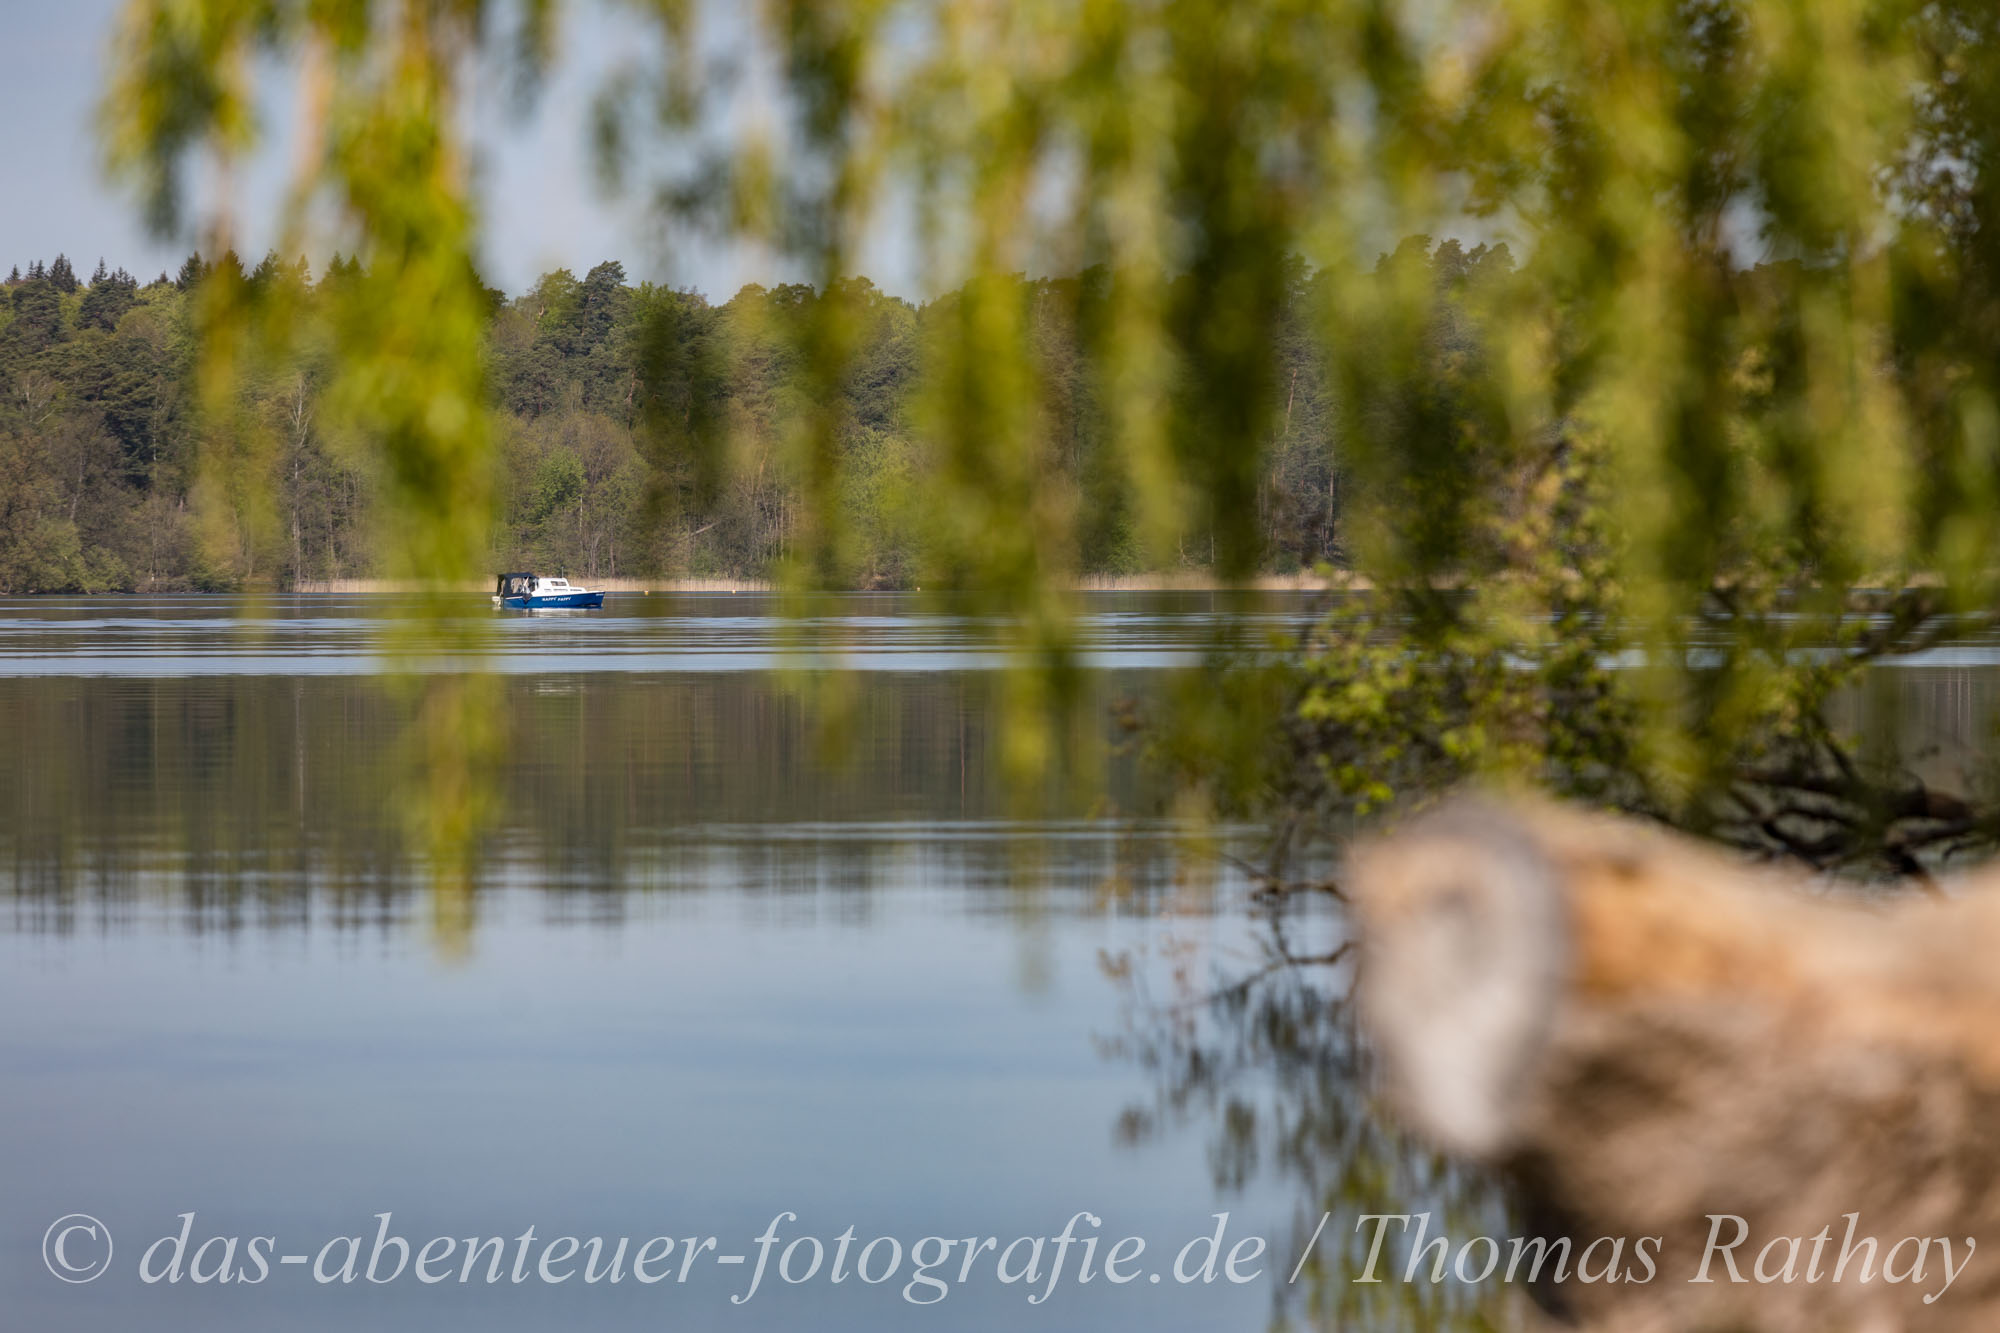 Naturfotografie am Werbellinsee im Barnimer Land in Brandenburg